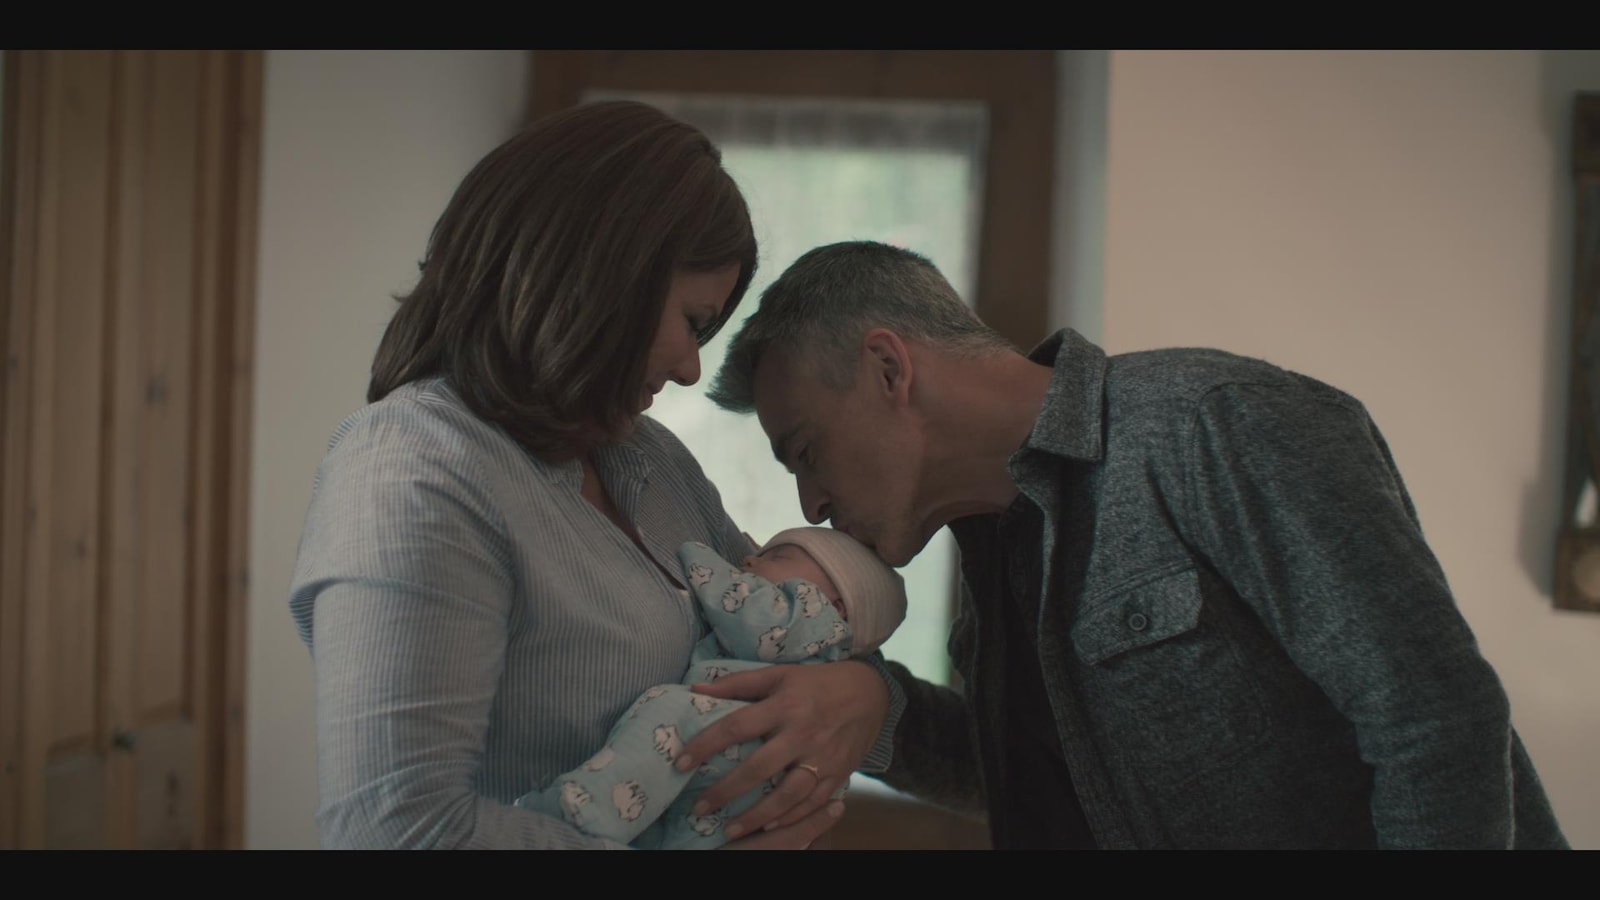 La femme tient le bébé dans ses bras, tandis que l'homme lui donne un bec sur la tête.